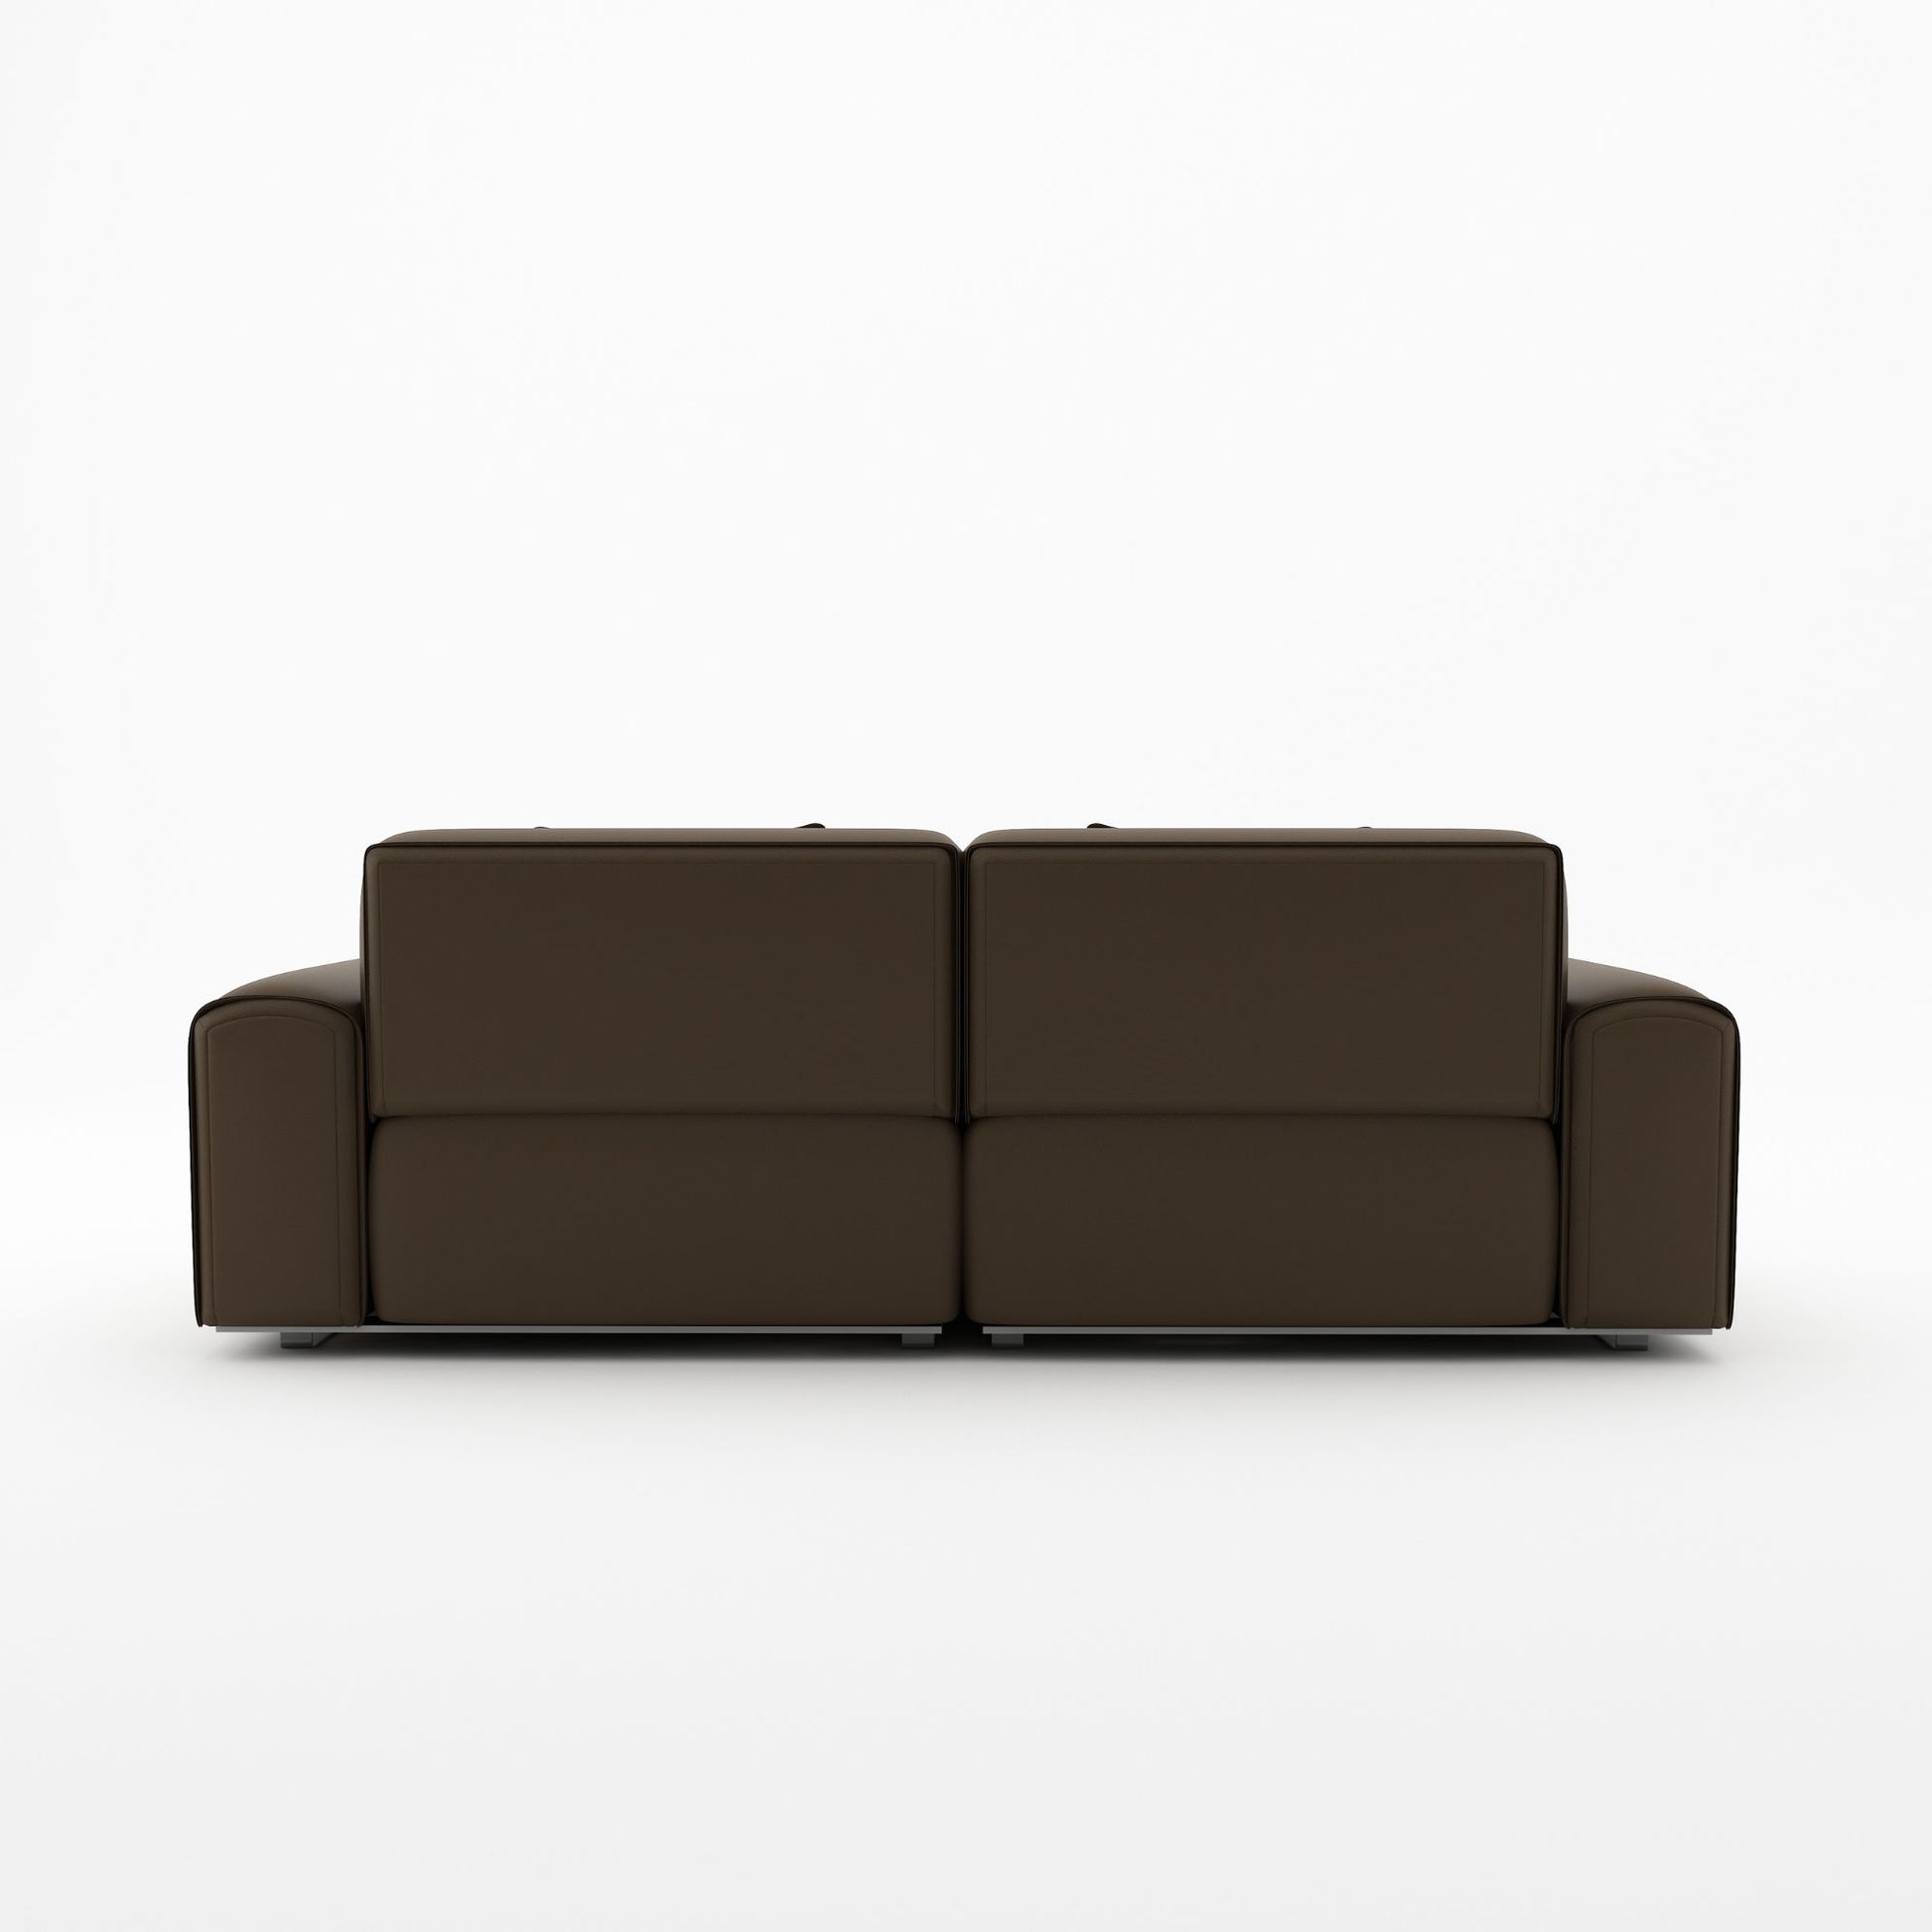 Colby dark brown top grain full leather 2 seat sofa